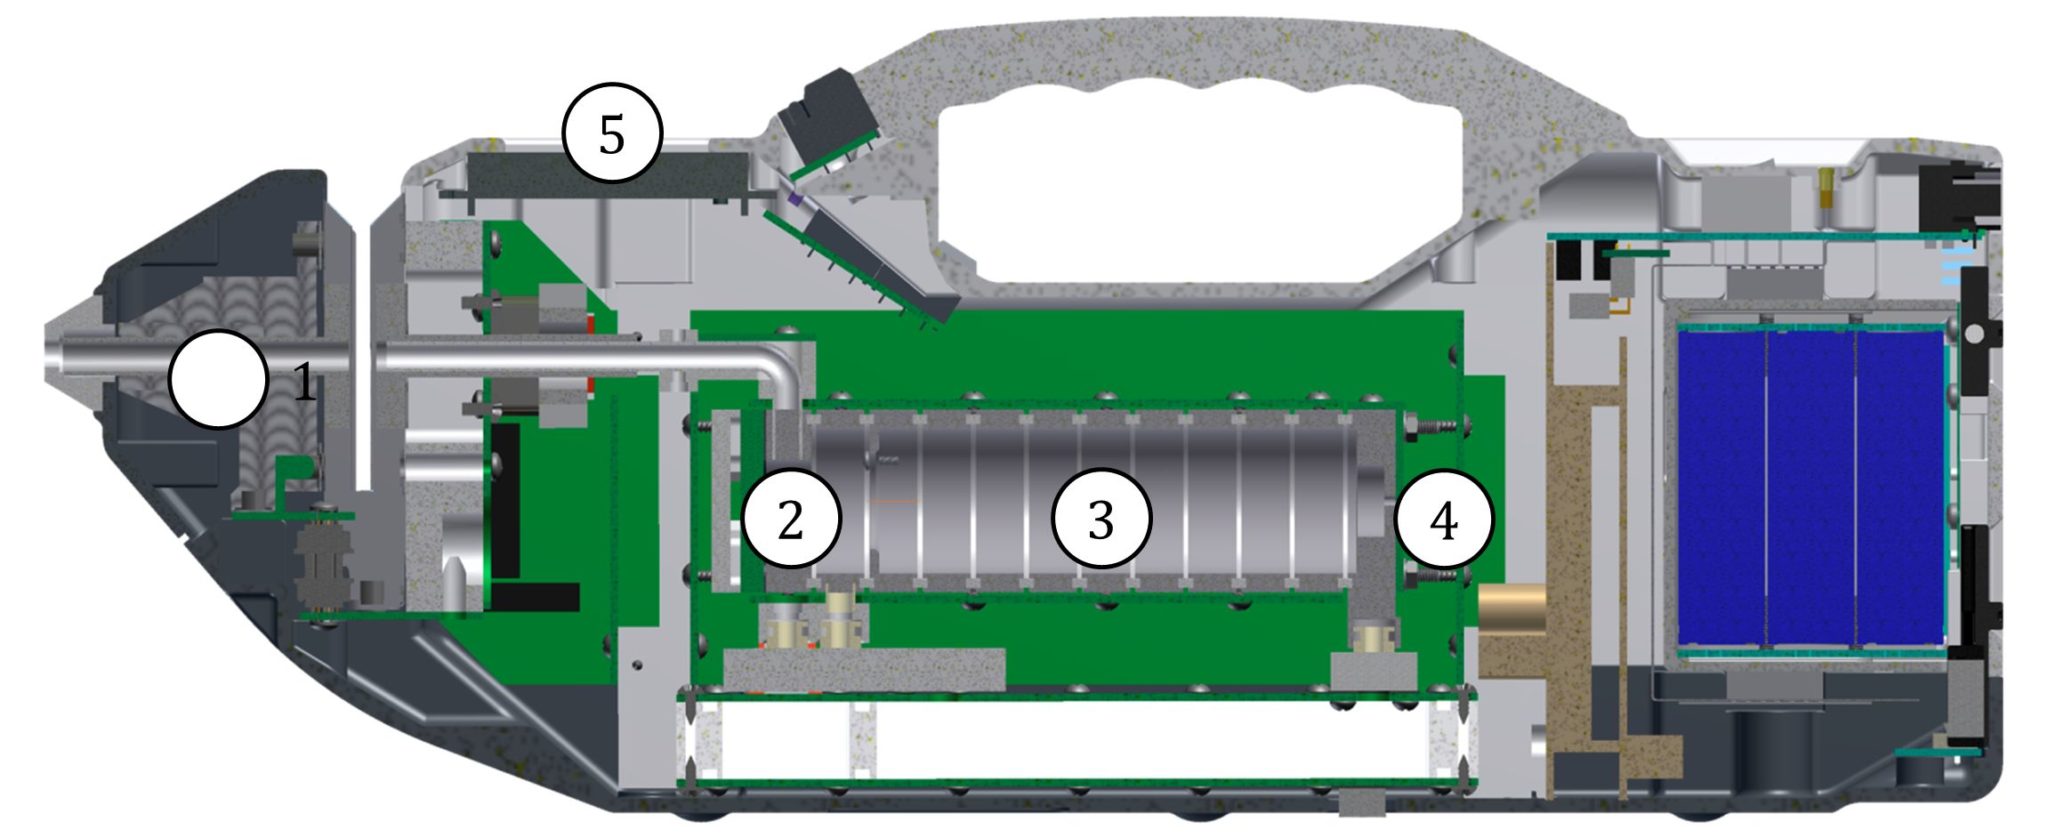 Ионный детектор кербер. Ионно-дрейфовый детектор Кербер-т. Портативный ионно-дрейфовый детектор Кербер-т. Спектрометр ионной подвижности ИДД Кербер-т. Кербер-т ионно-дрейфовый детектор цена.